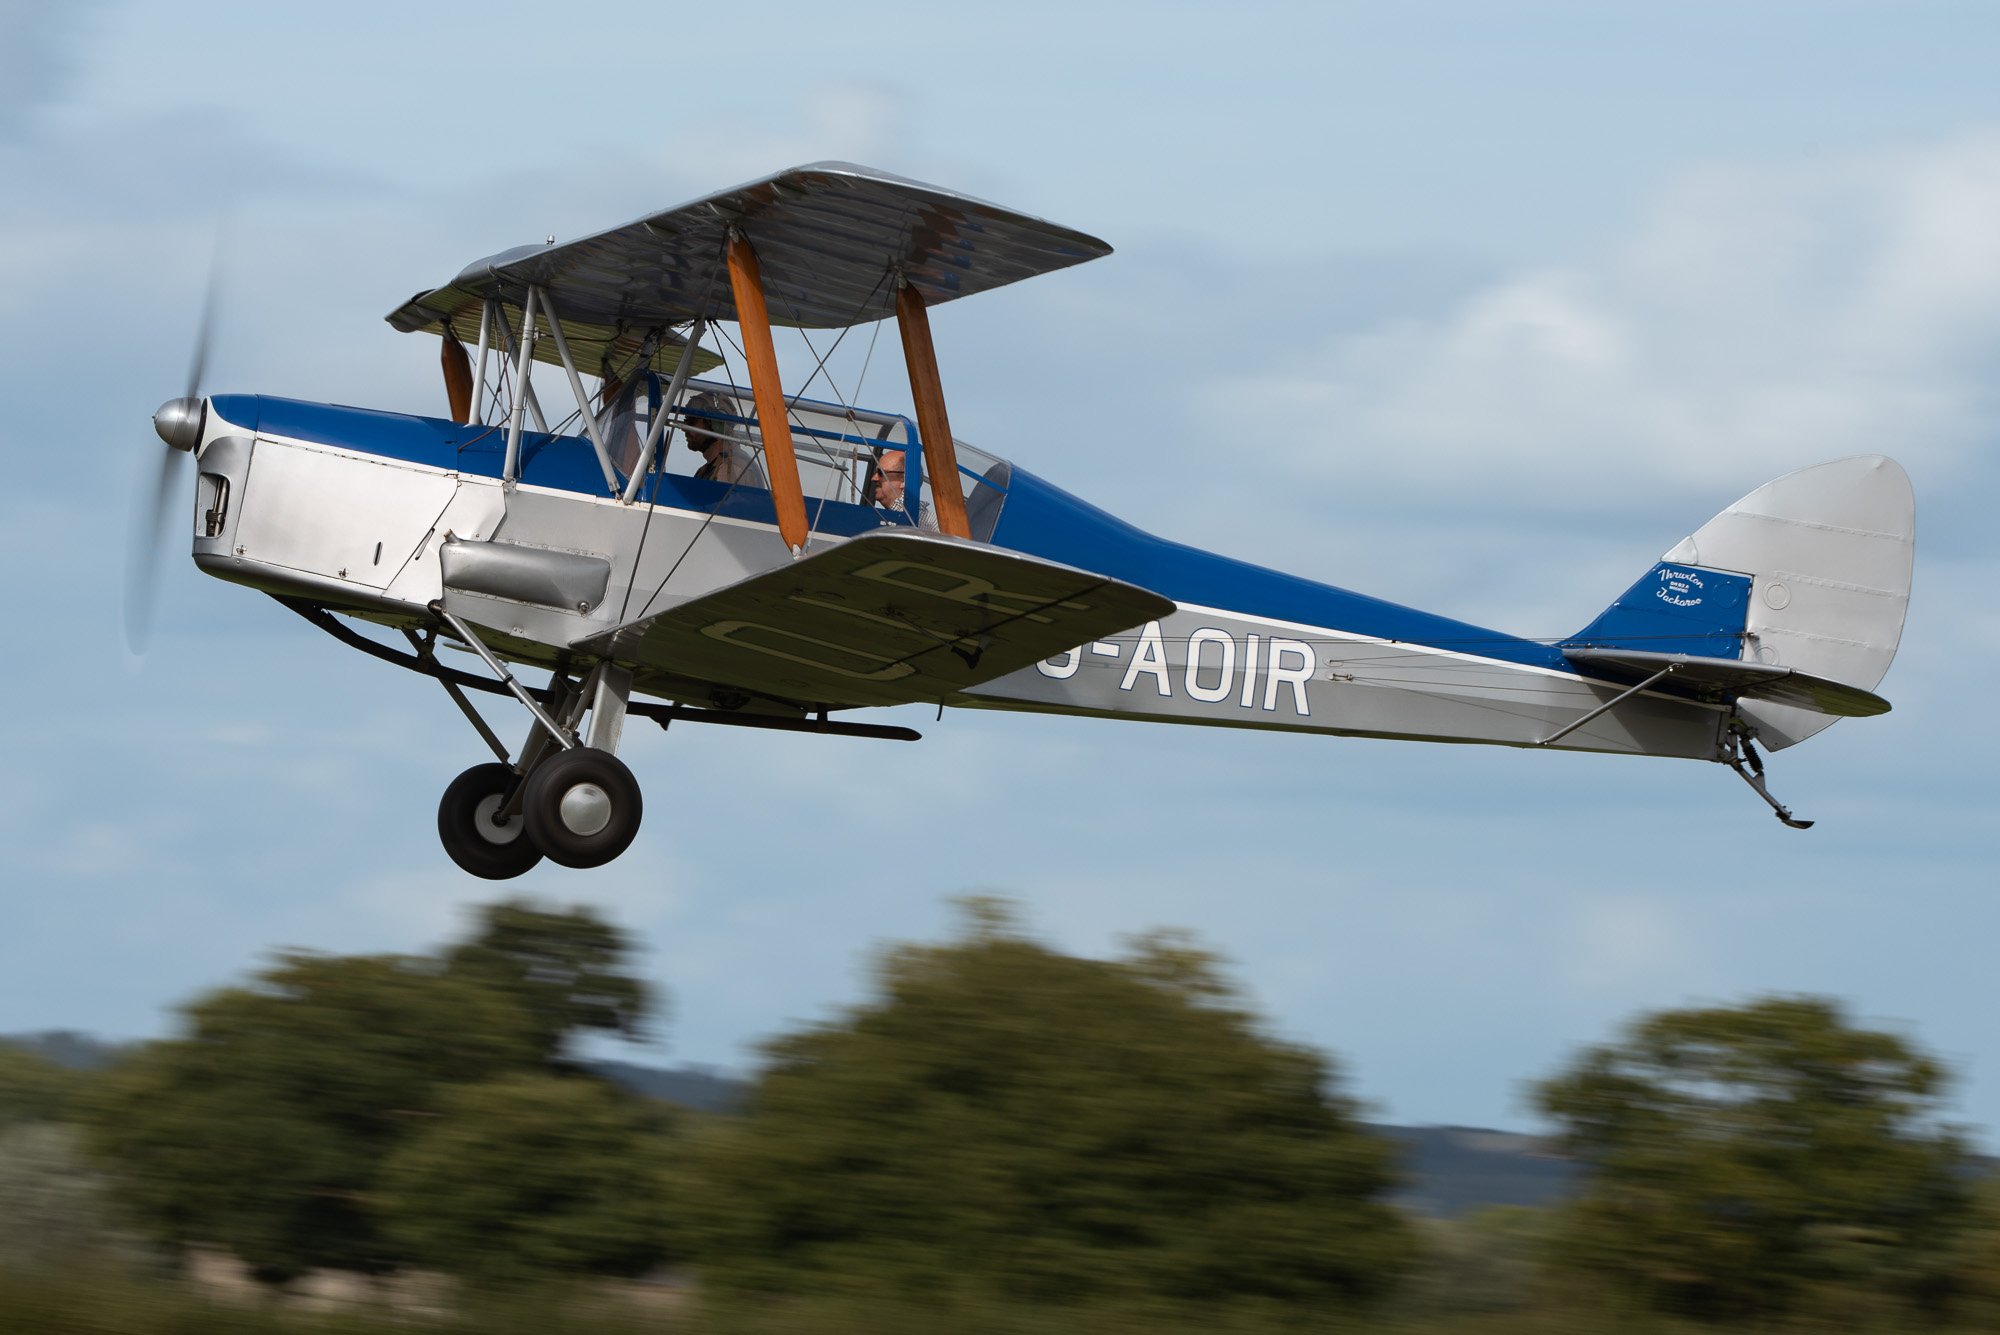 De Havilland Thruxton Jackaroo (Modified DH82A) (G-AOIR)